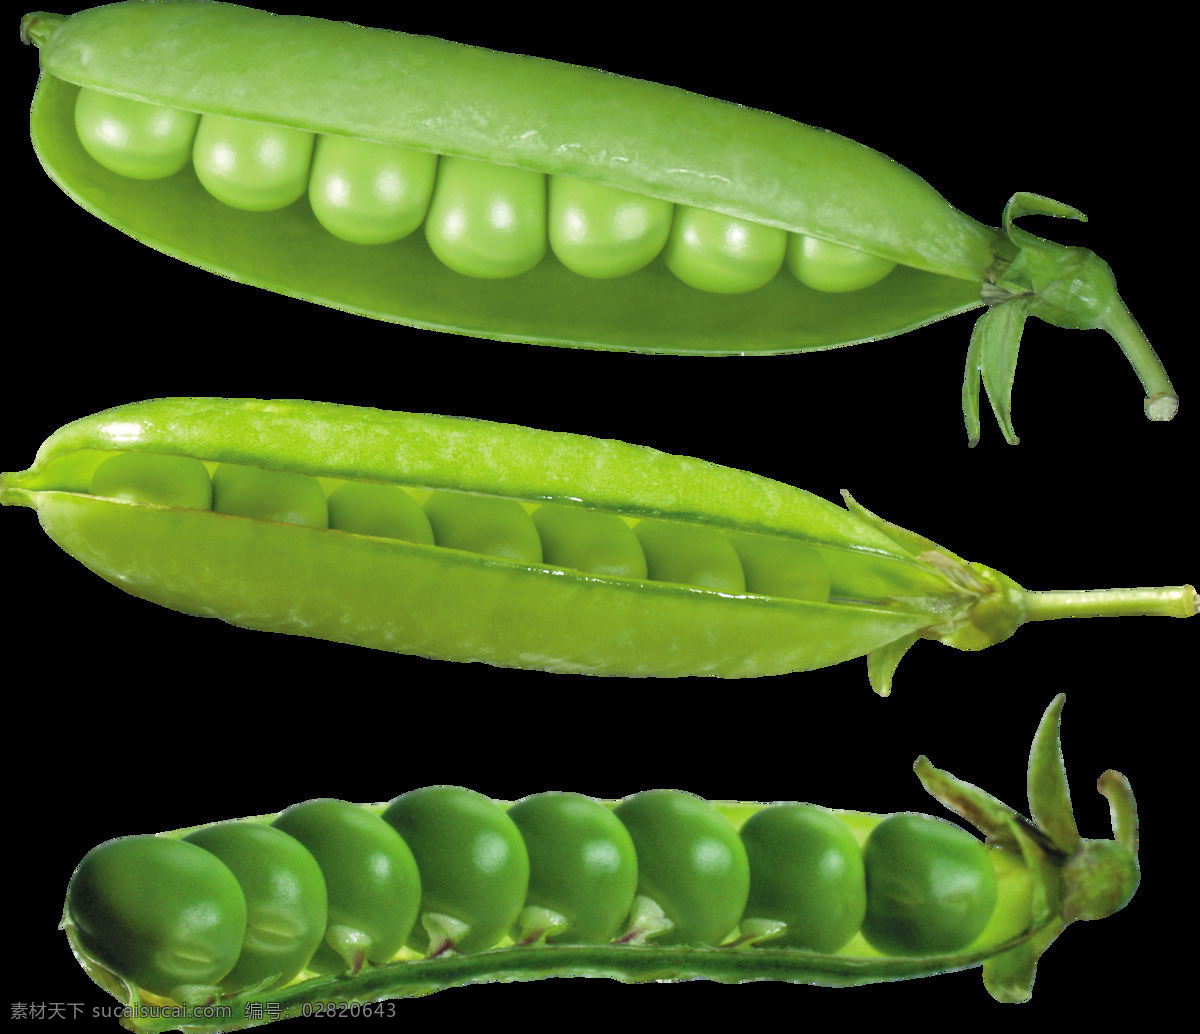 豌豆 豆 青豆 绿色 蔬菜 食物 食材 生物世界 绿色食品 农产品 美食 生活用品 生活百科